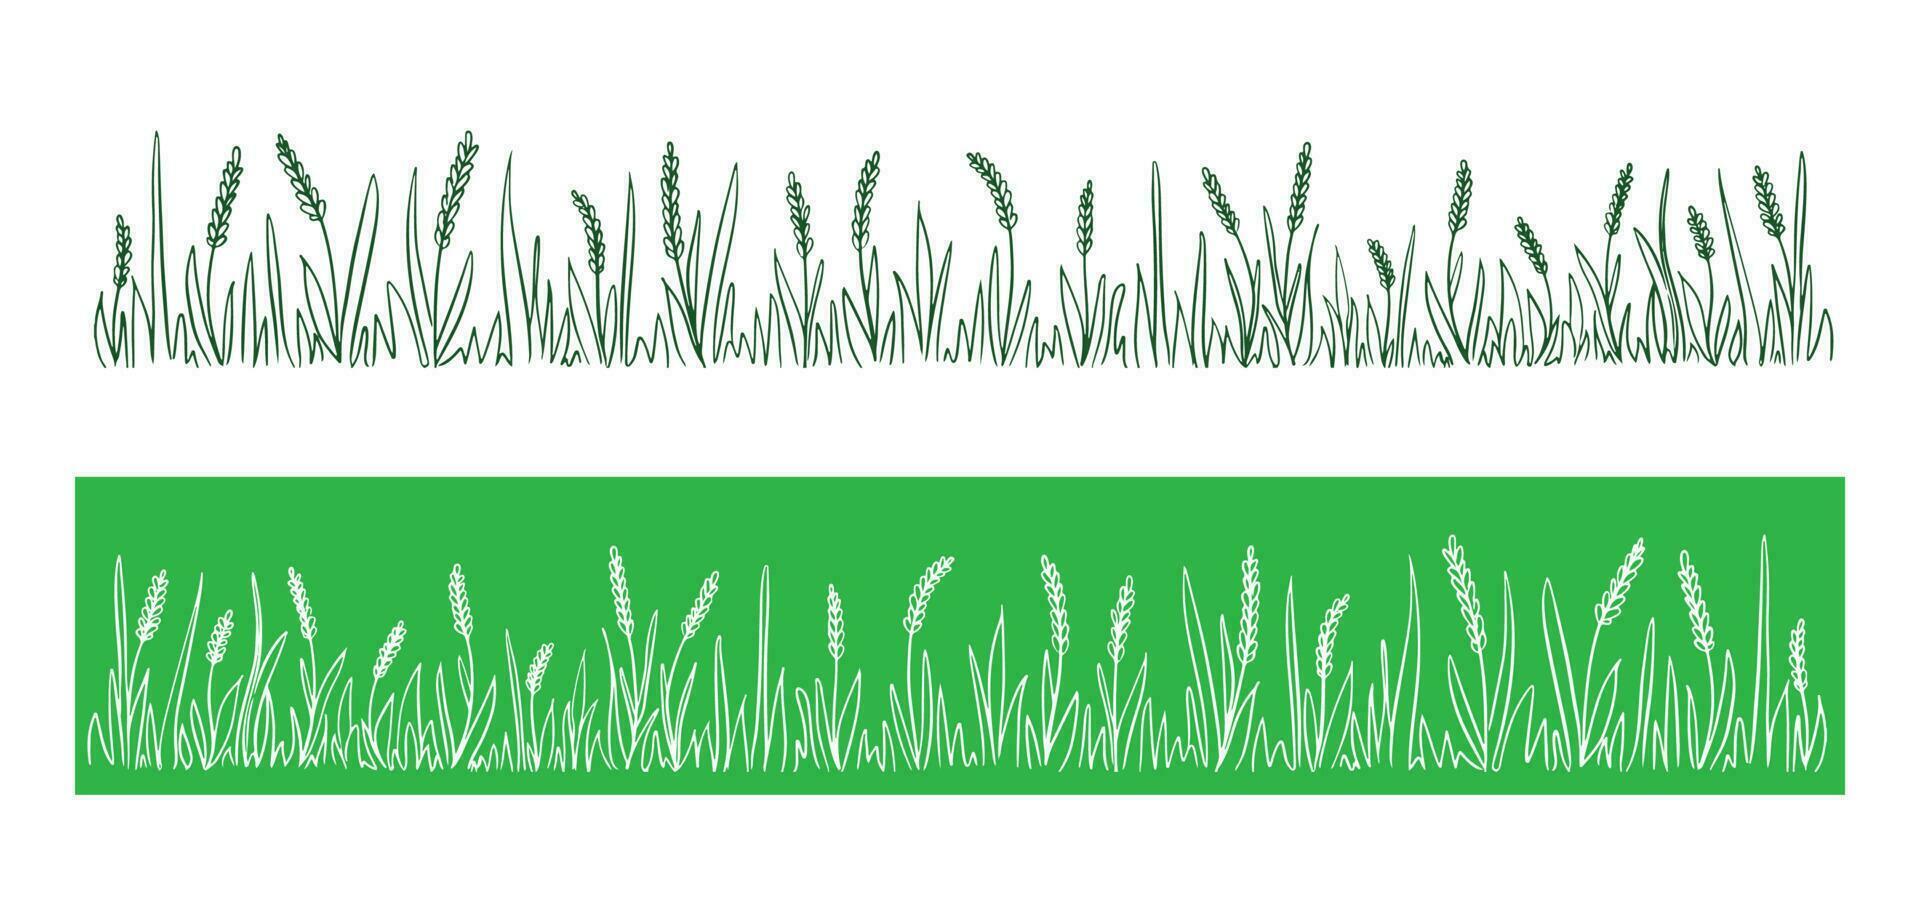 selvagem orelhas do milho campo em uma verde background.grass dentro campo.vetor ilustração. vetor